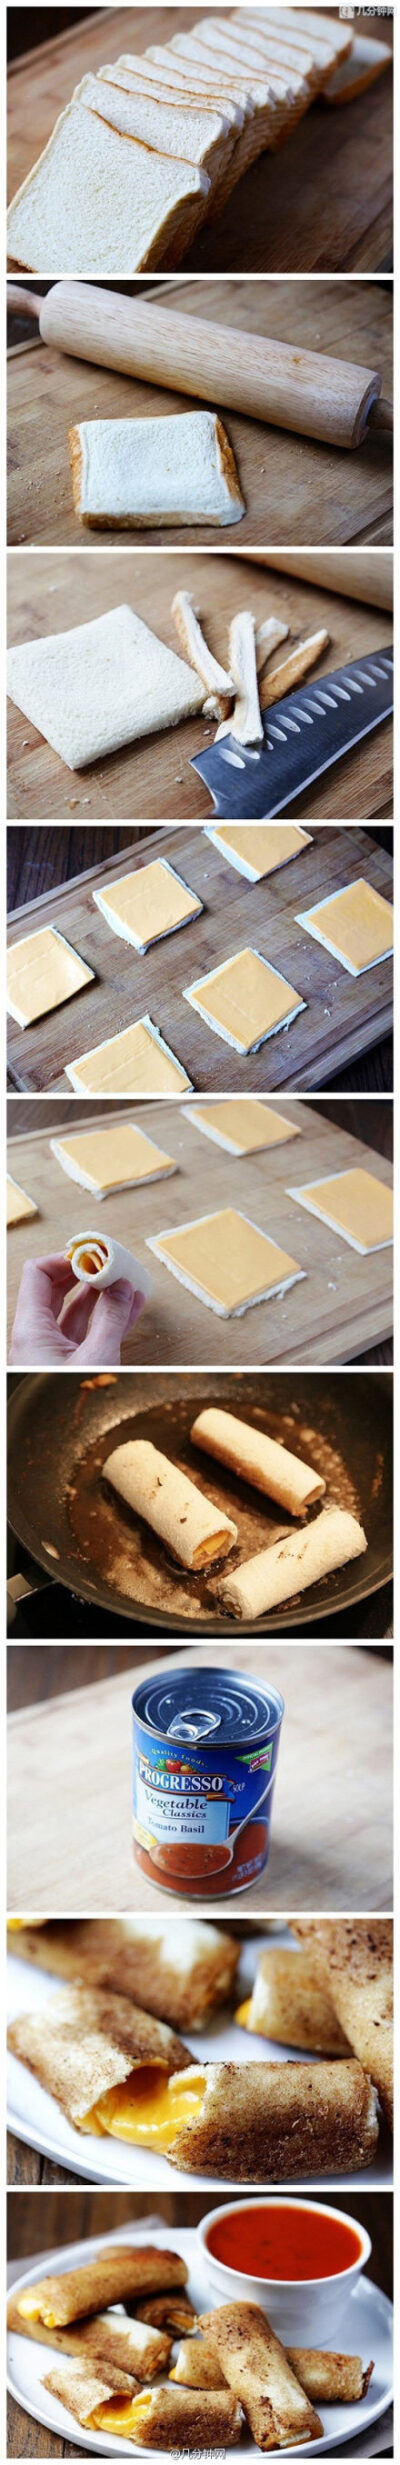 奶酪土司卷：土司用擀面杖擀薄，切掉硬边，加一片奶酪卷成卷，放油锅里煎至奶酪融化即可